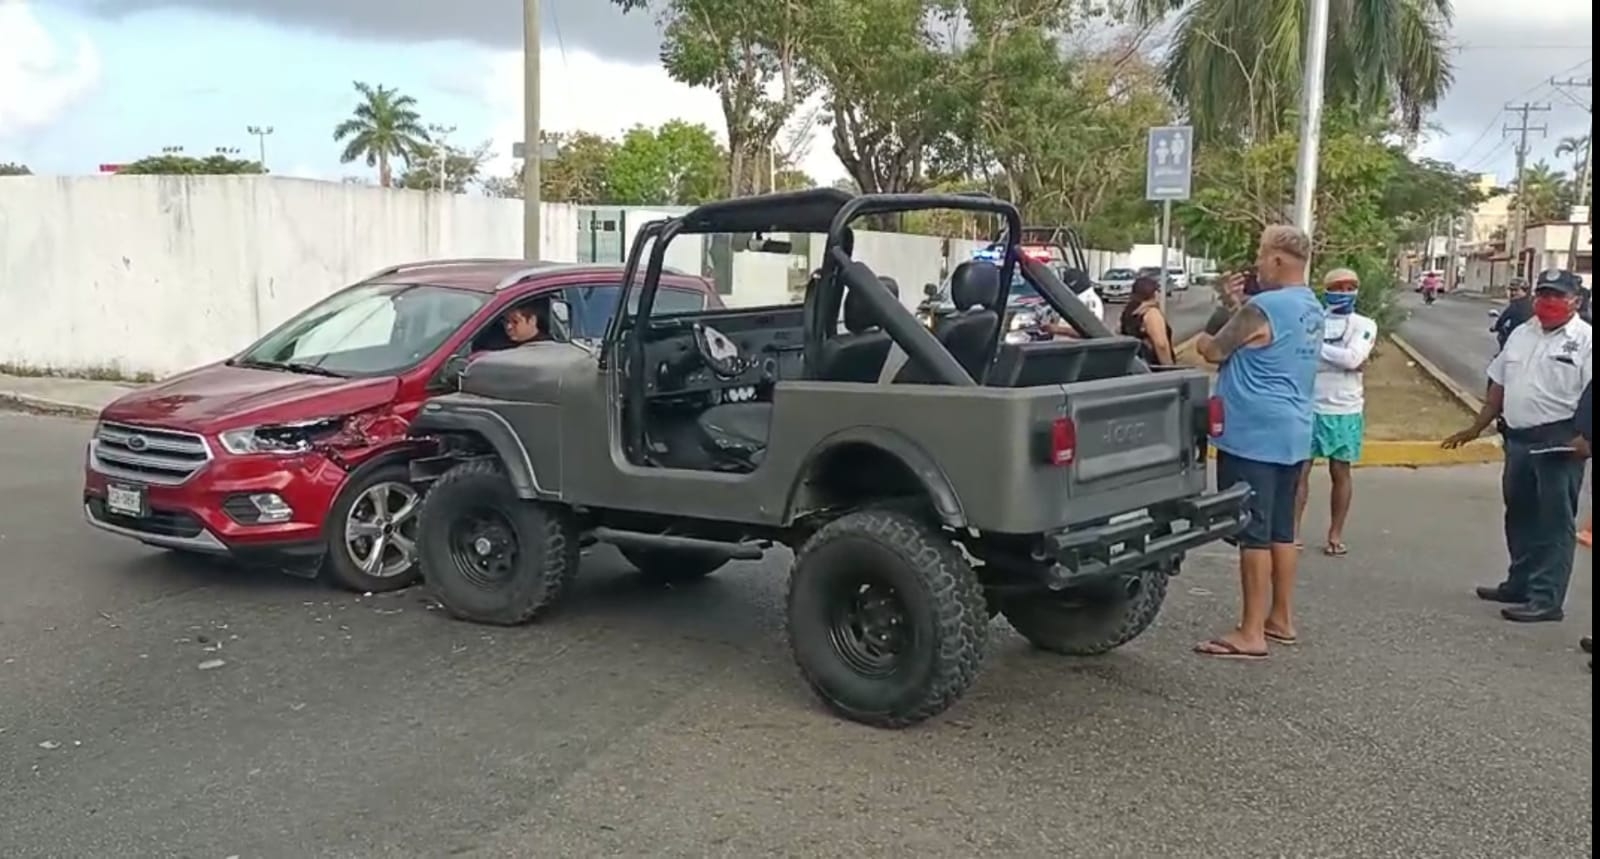 Los conductores de ambos vehículos en Cozumel resultaron ilesos, mientras las unidades registraron daños considerables